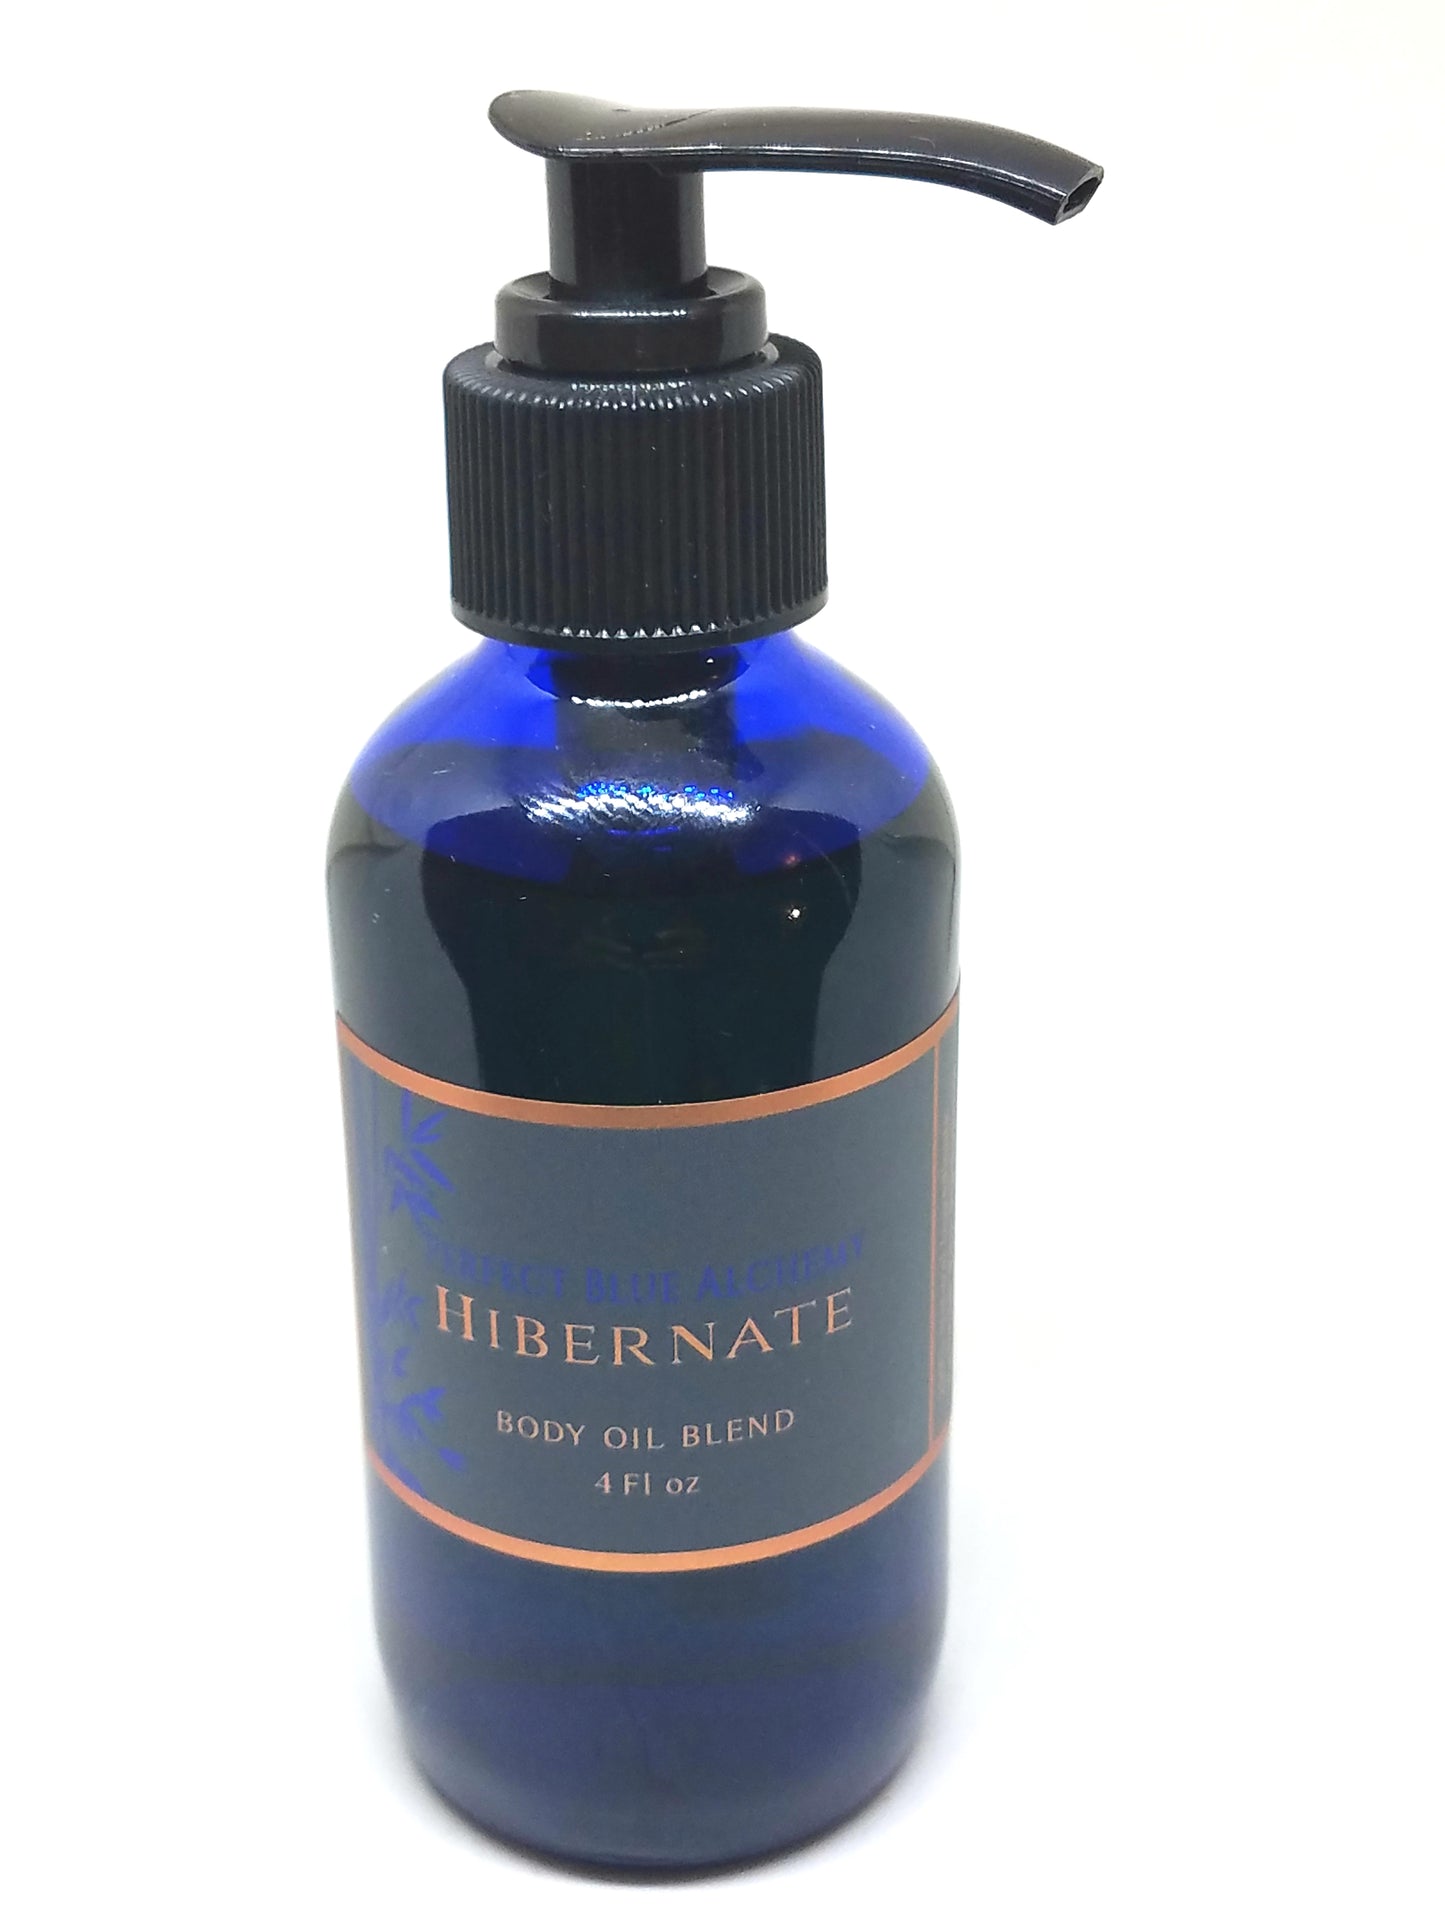 Hibernate Body Oil